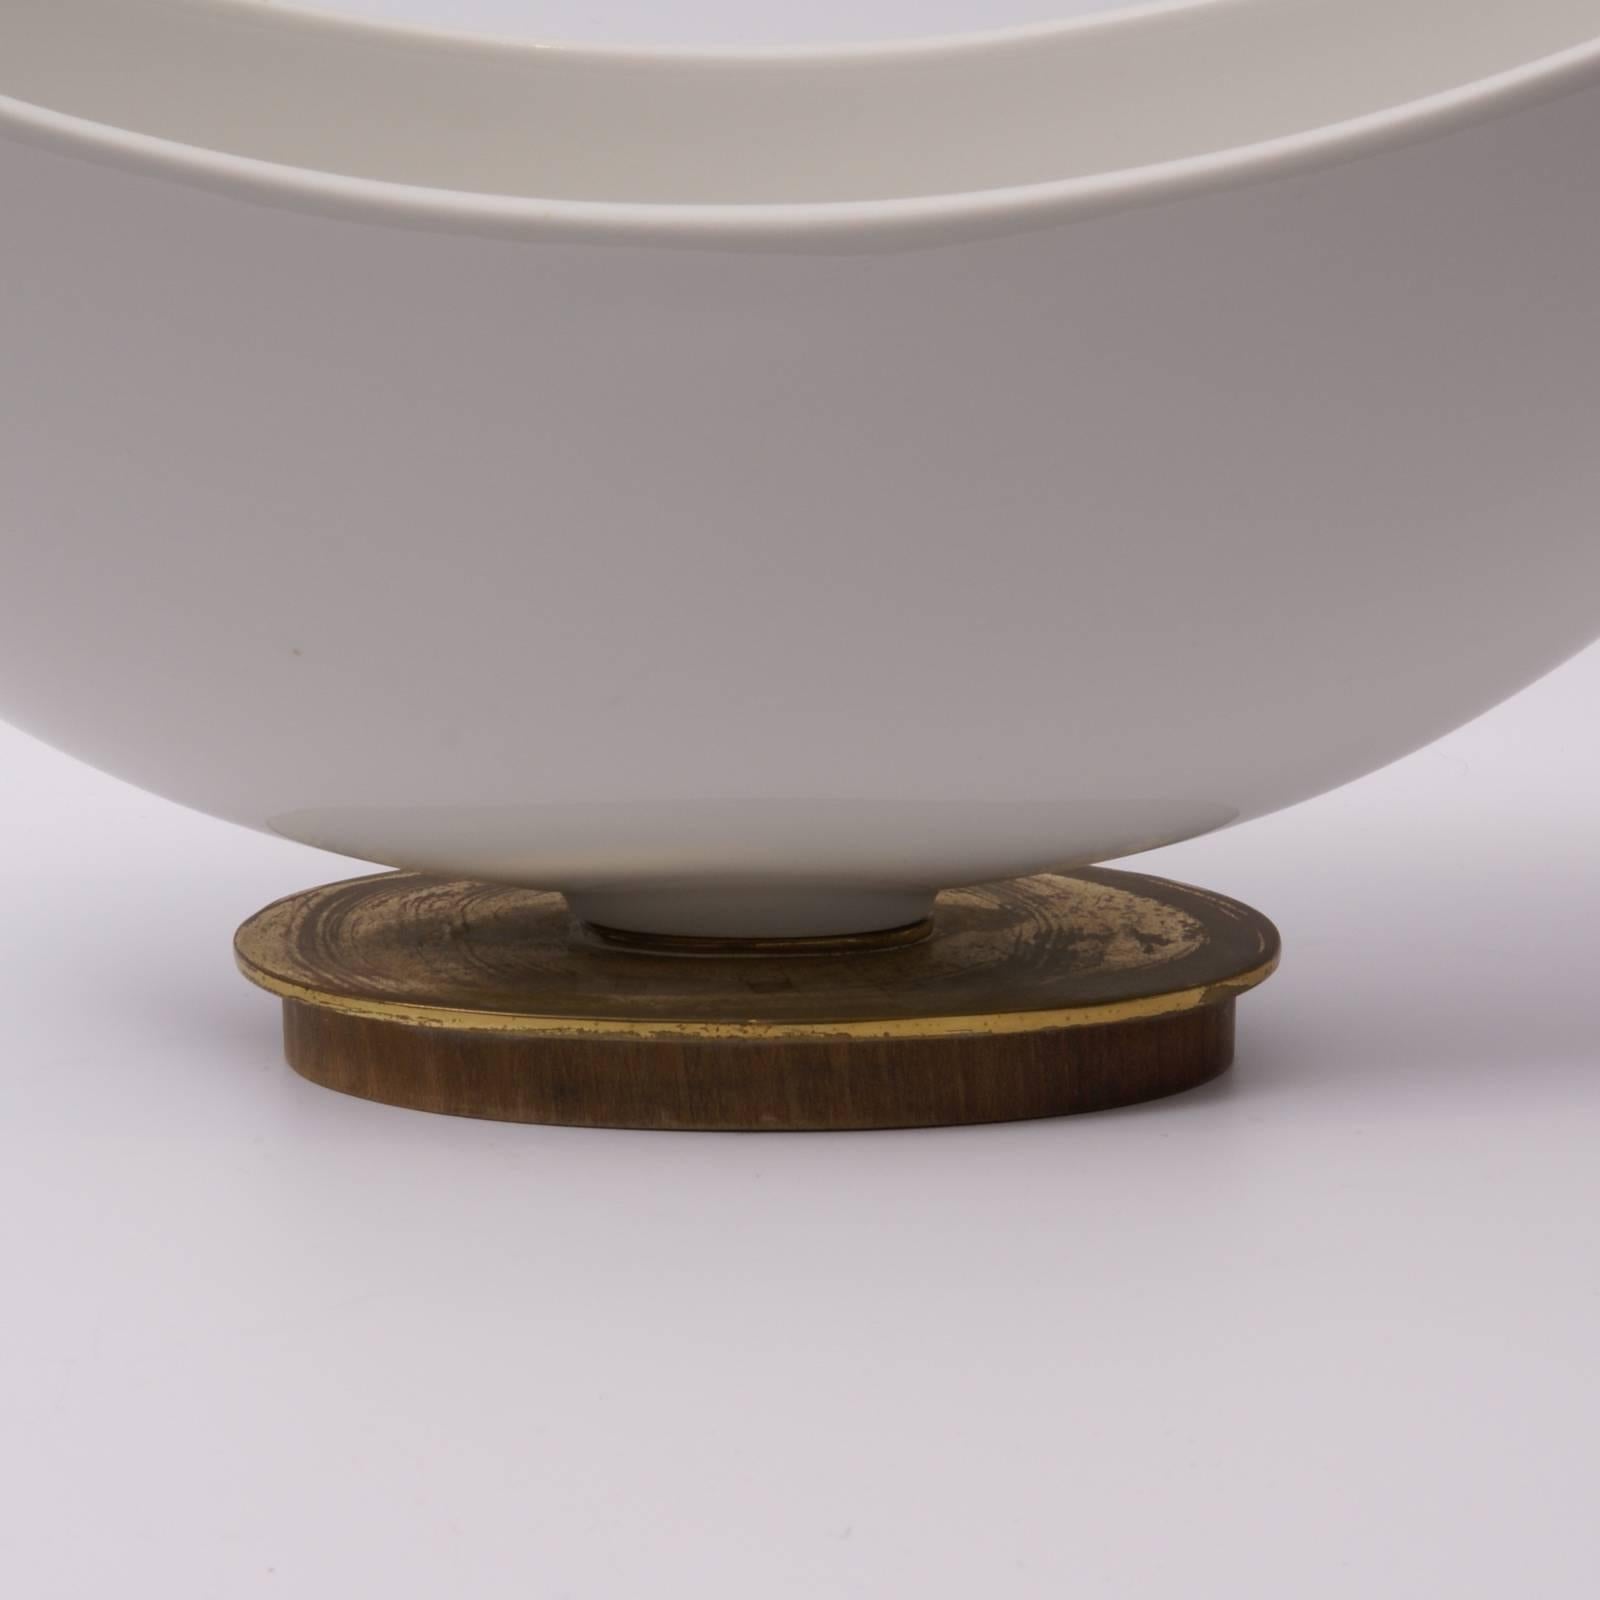 Stylised porcelain flower holder with his original porcelain divider (both parts signed ) on wood and brass oval foot, designed by Siegmund Schütz for K.P.M.(Königliche Porzellan Manufaktur).
Lit: 